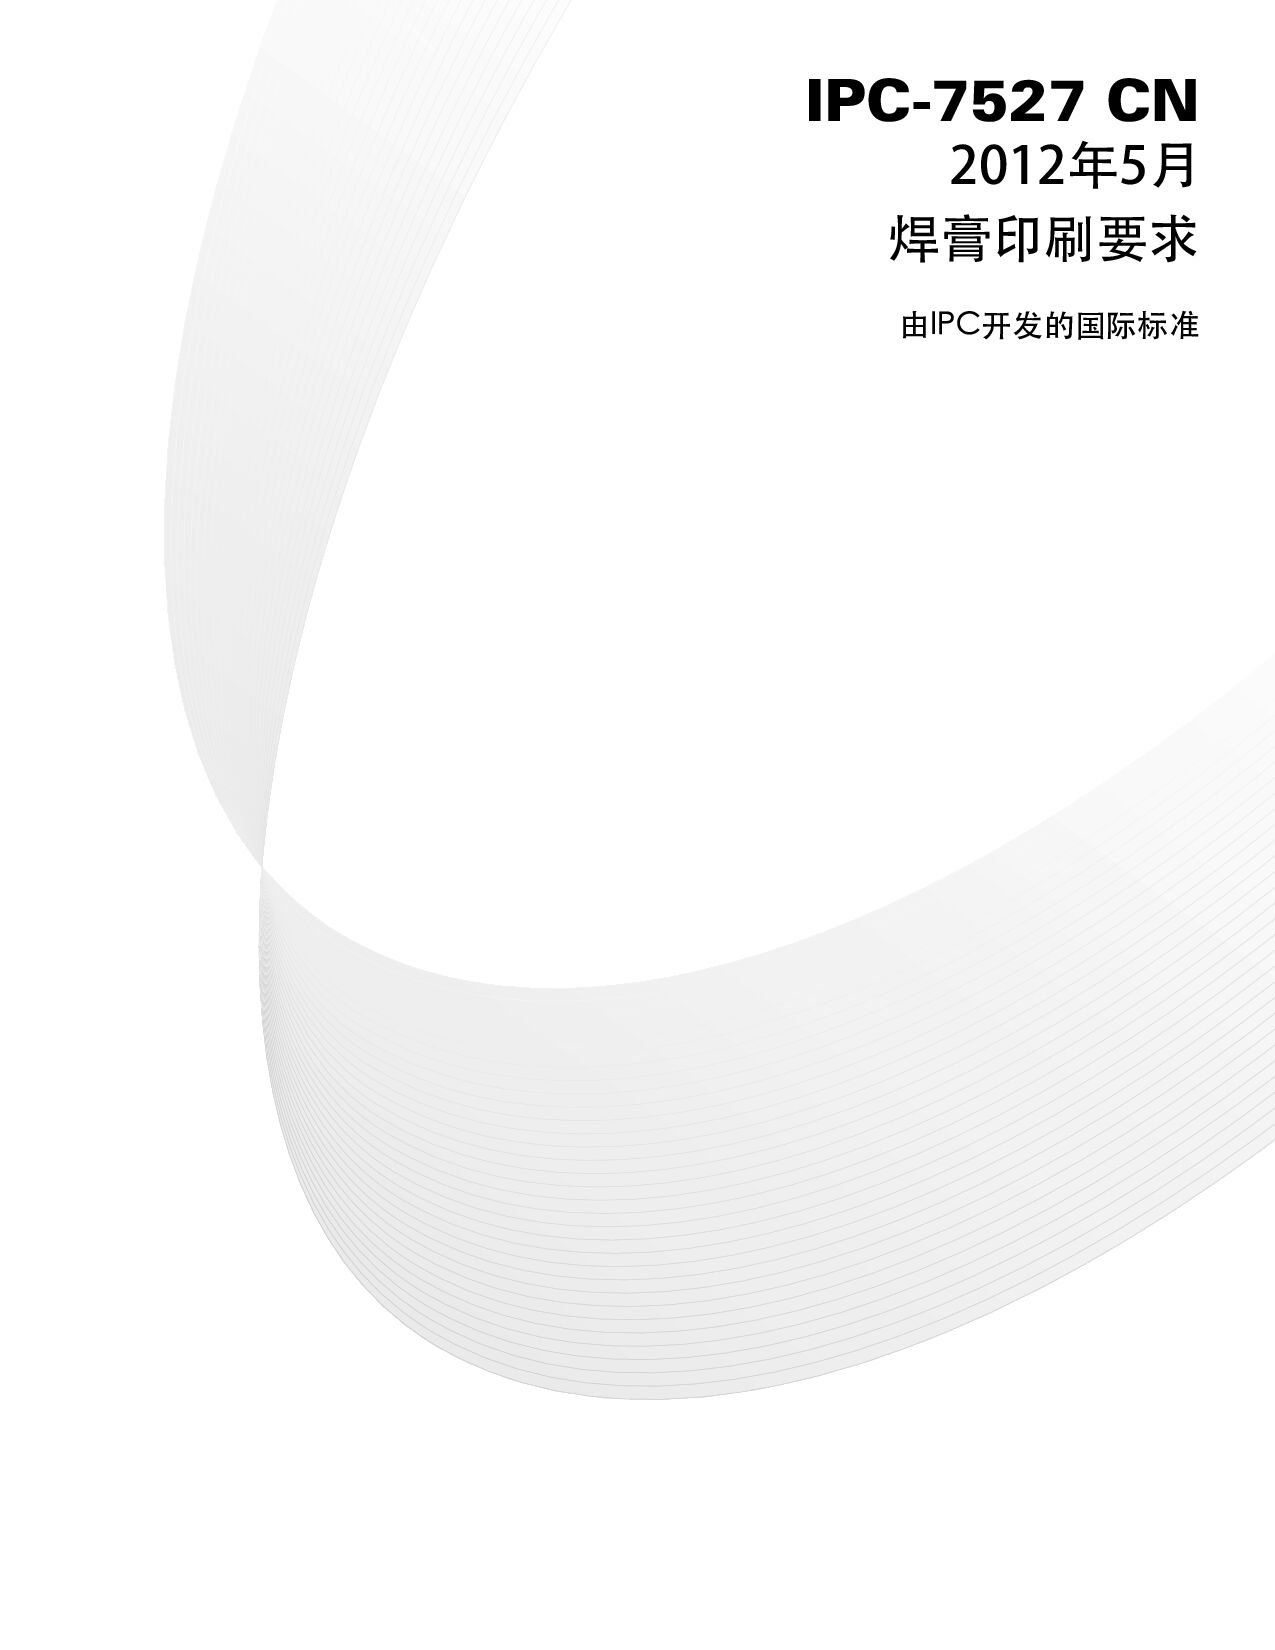 IPC 7527 CHINESE-2012封面图